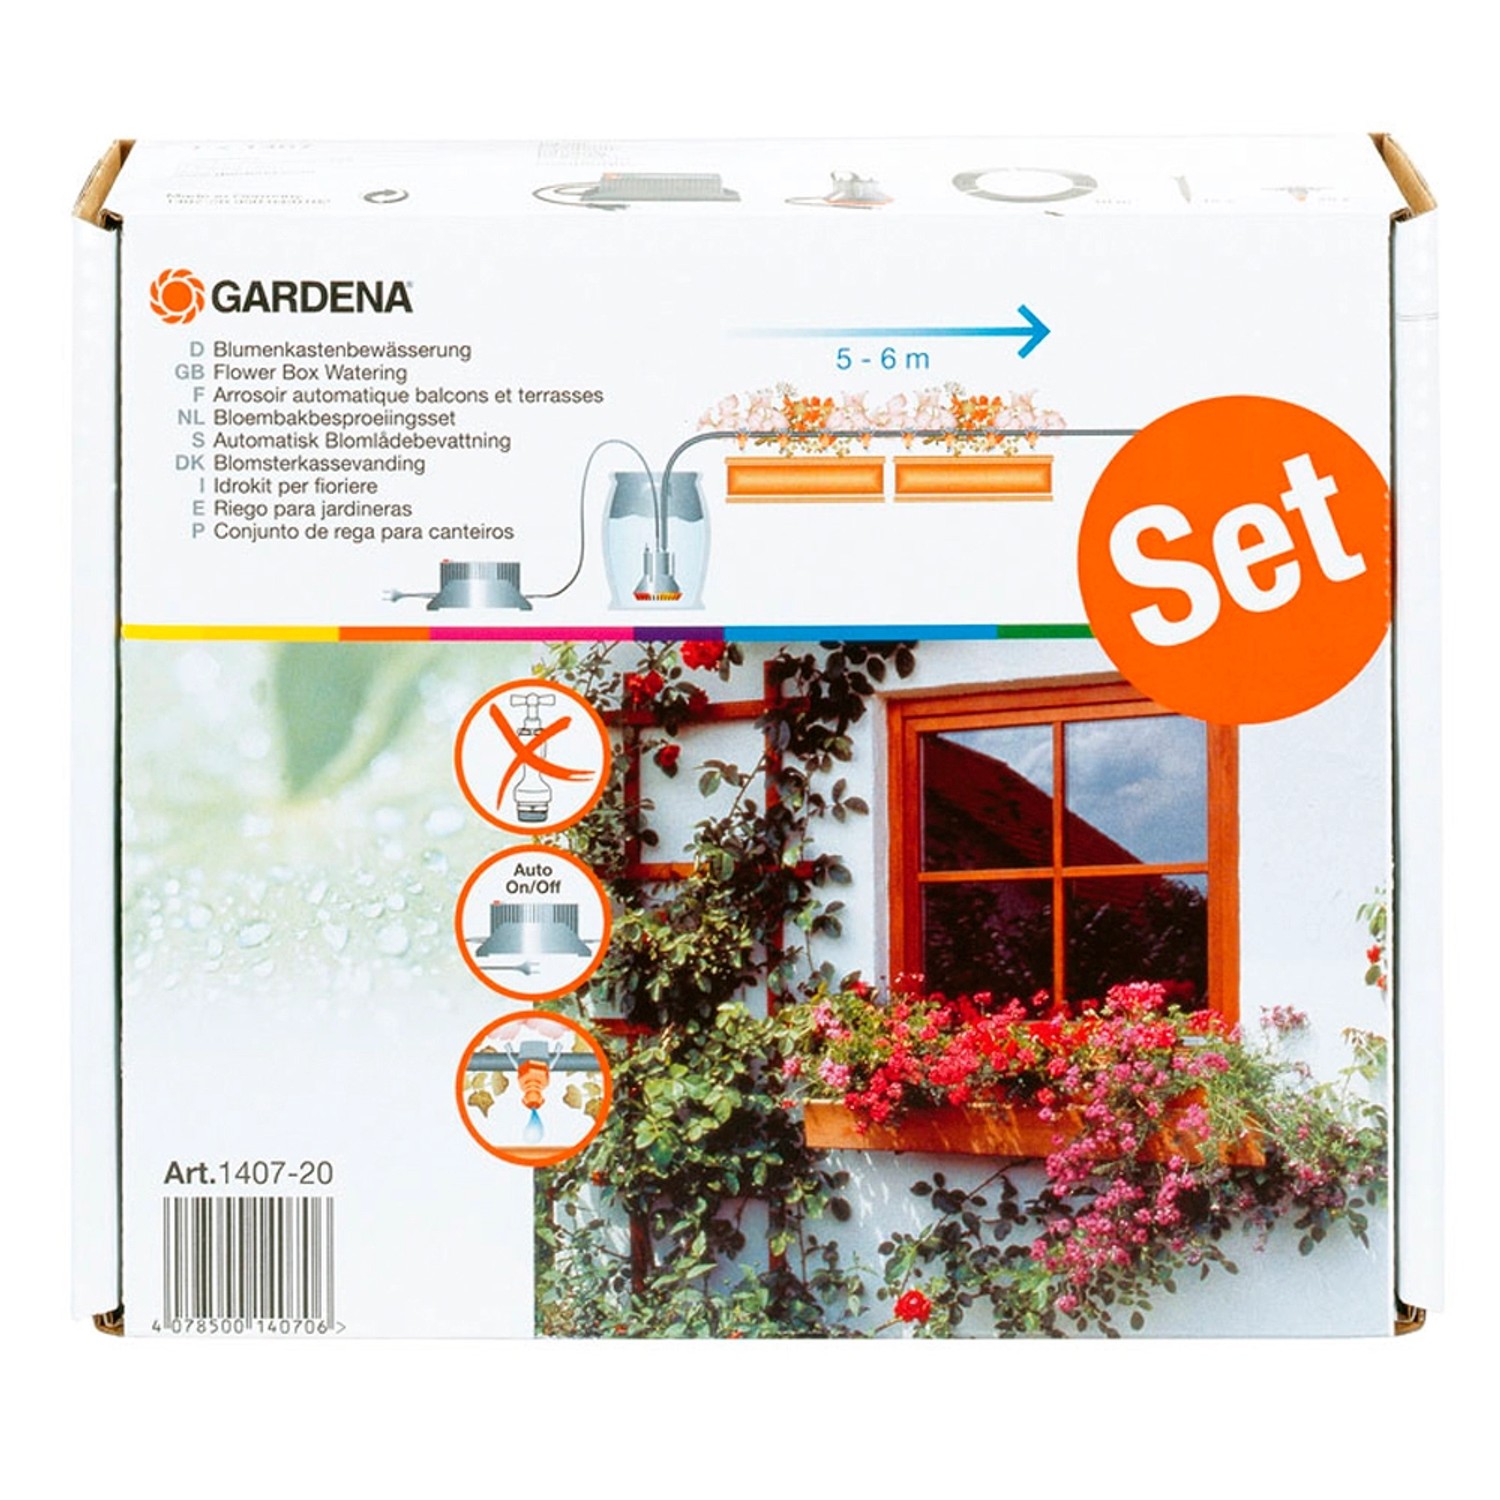 Gardena Vollautomatische Blumenkastenbewässerung 5 - 6 m günstig online kaufen